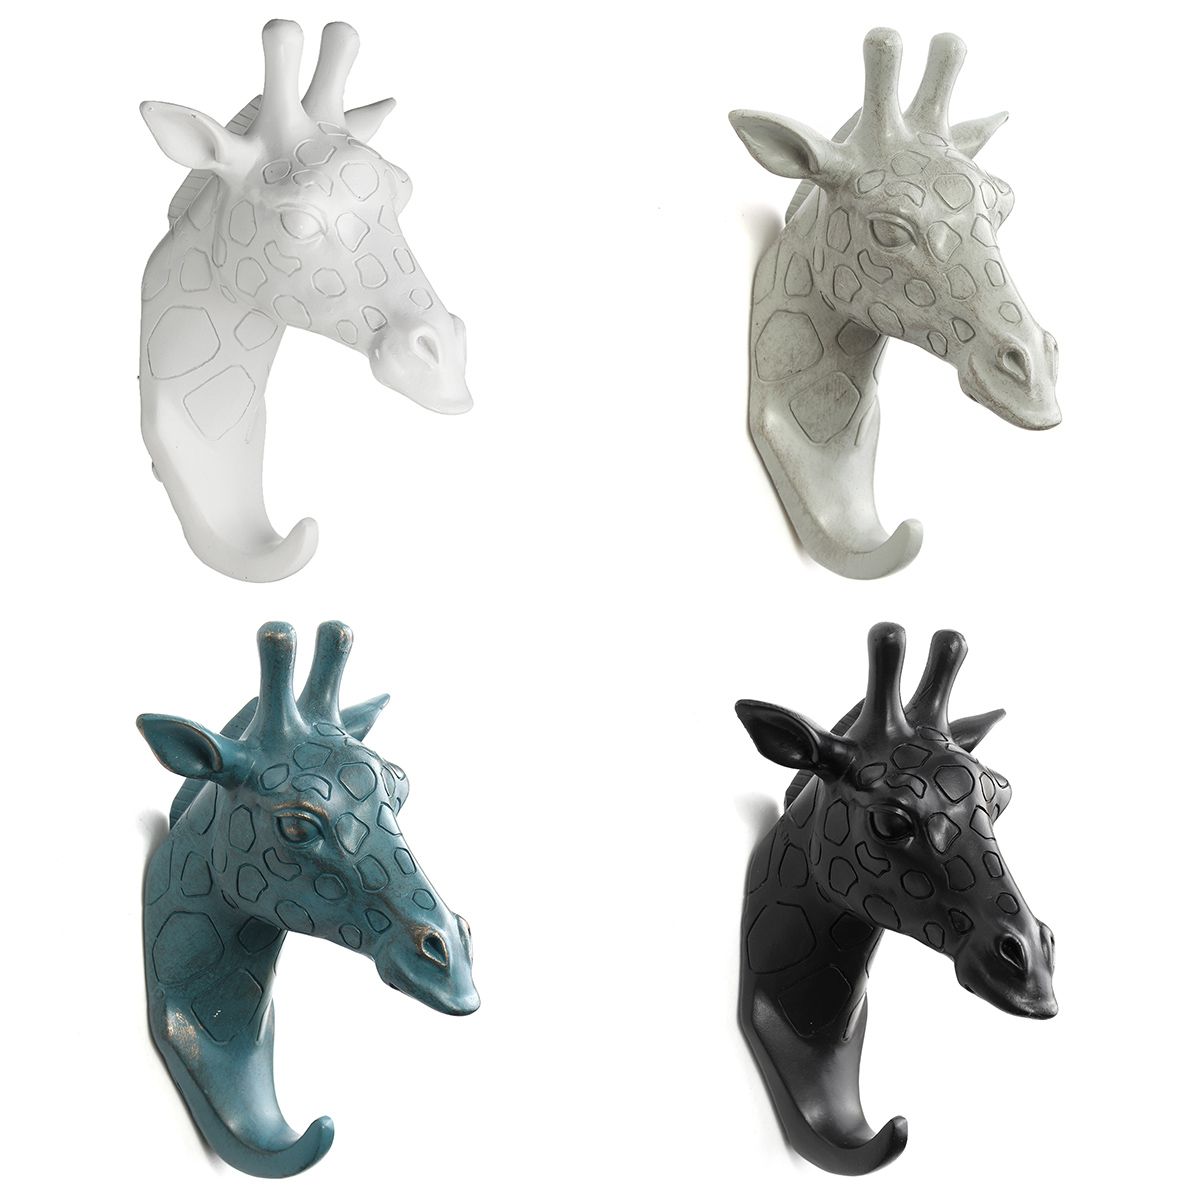 Hot-Animal-Deer-Antlers-Decorative-Wall-Hook-Rack-Coat-Hat-Key-Hanging-Rack-1590296